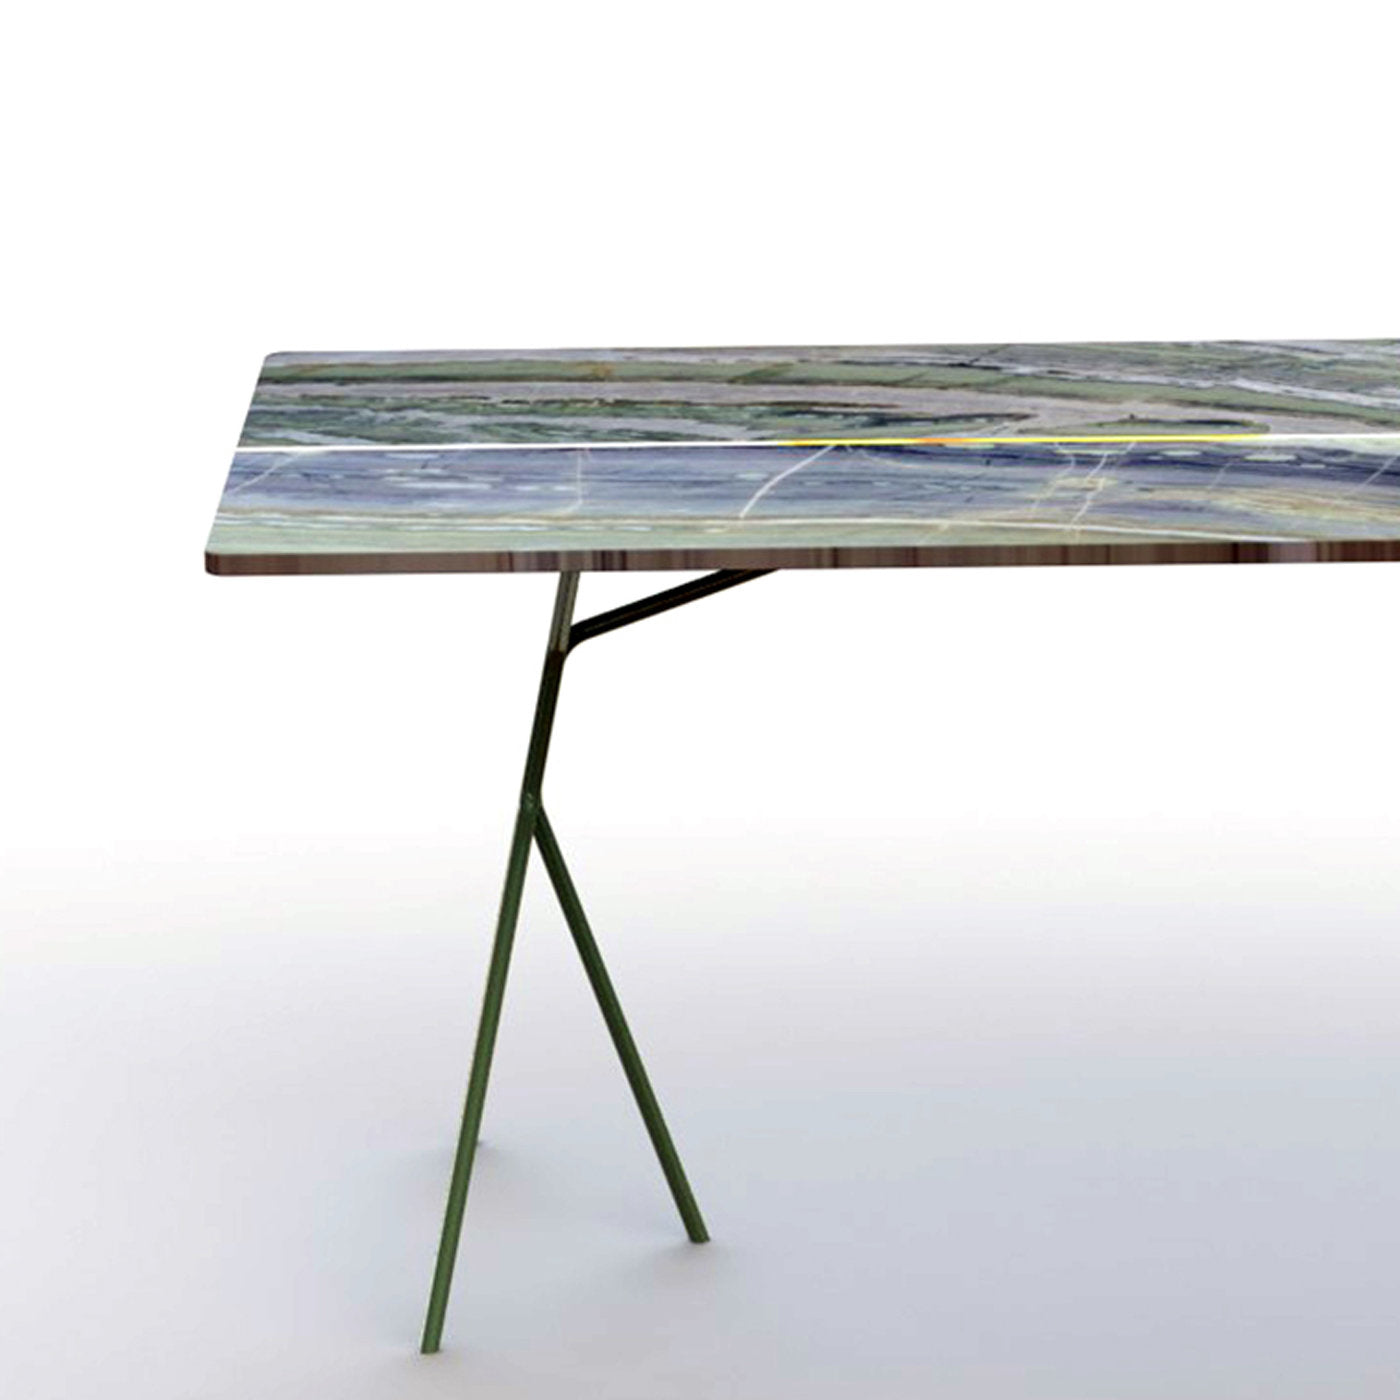 Split Table in River Jade Marble - Alternative view 2